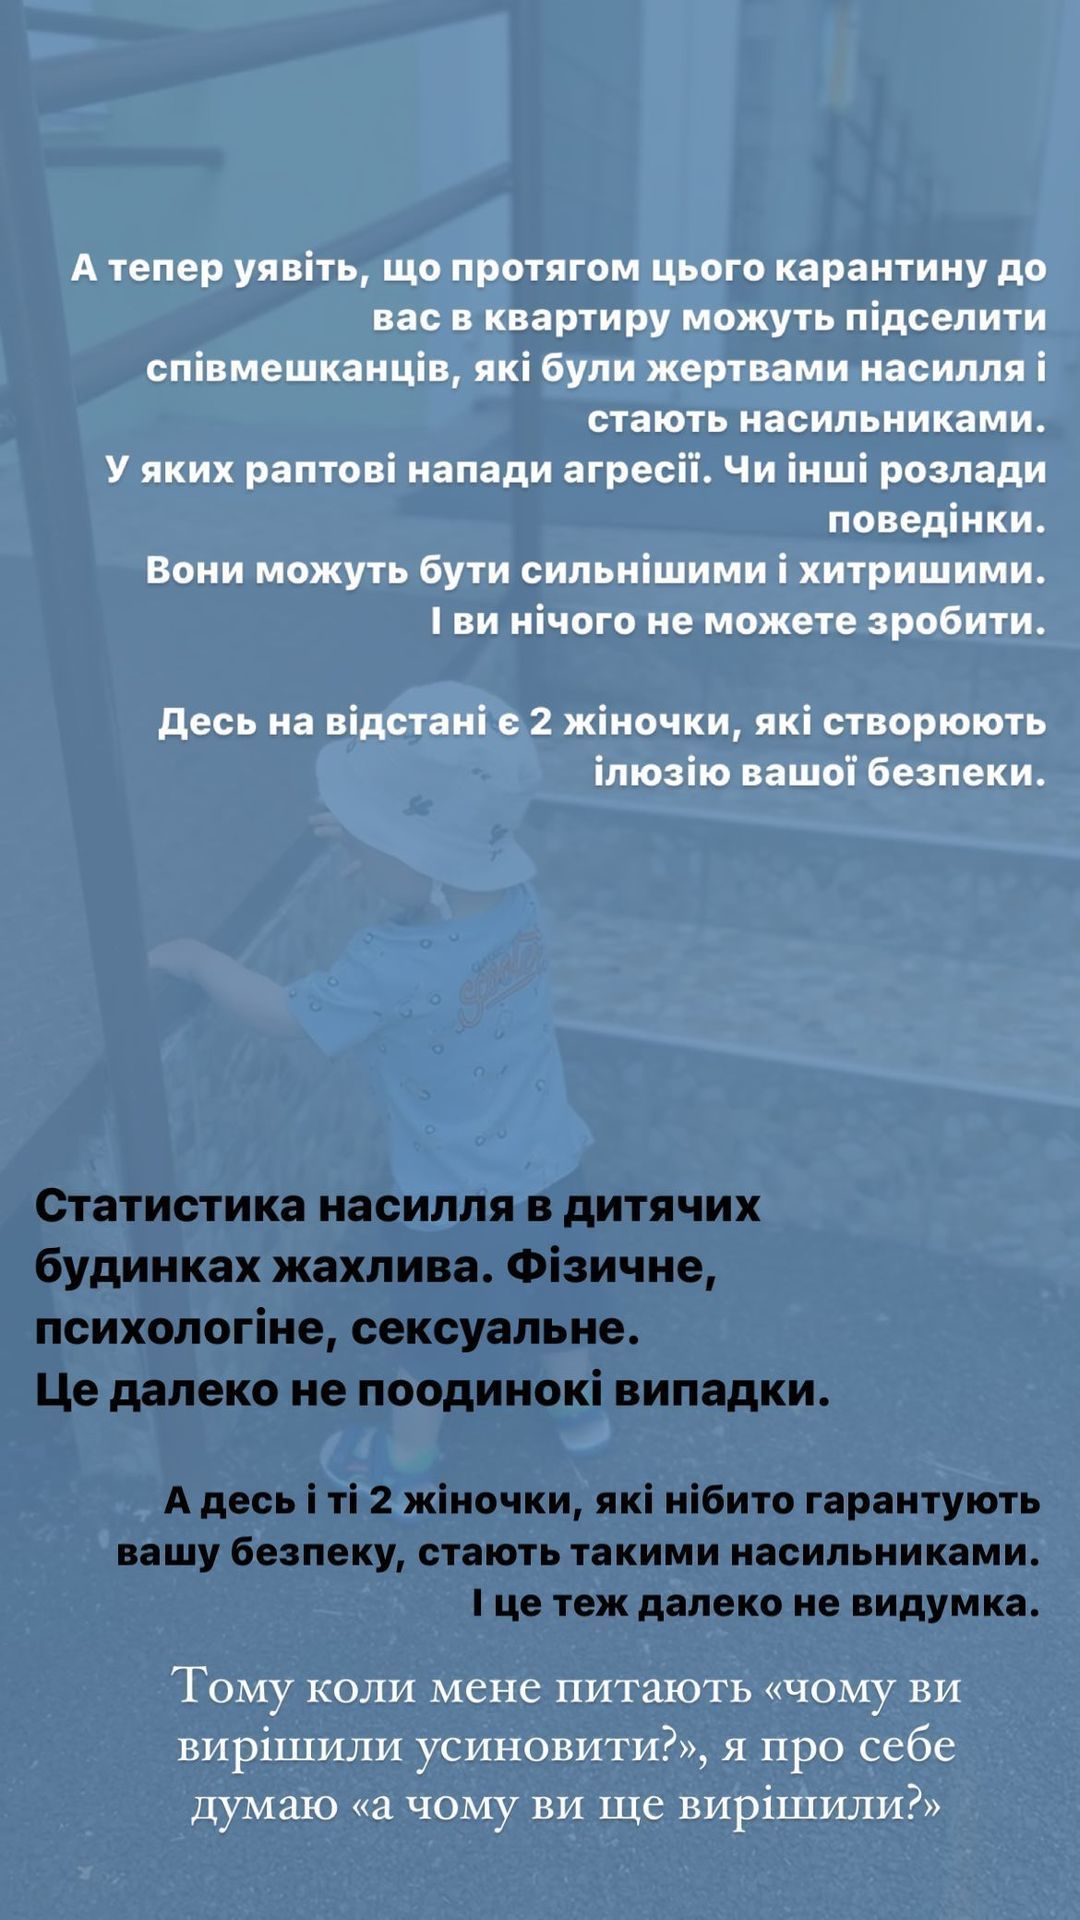 Також Інна Мірошниченко зазначила, що статистика насилля у дитбудинках жахлива: 